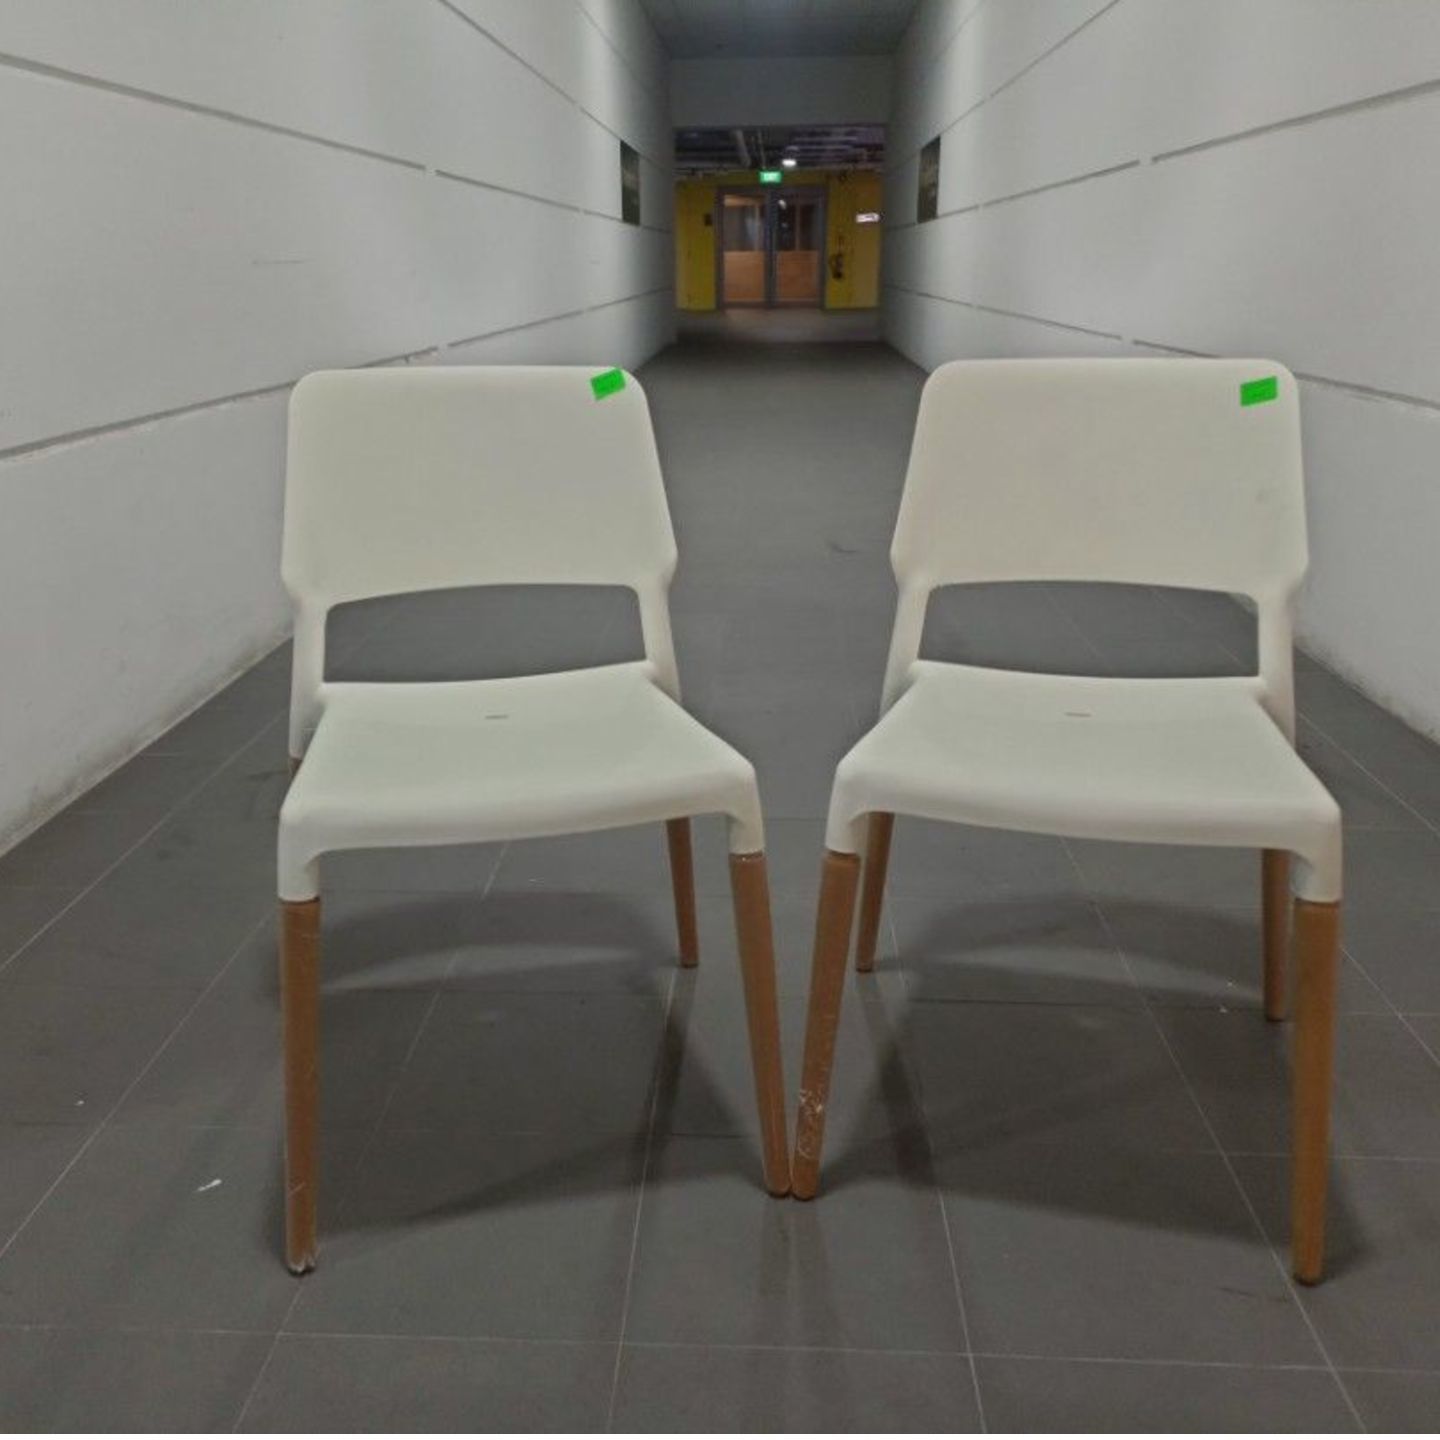 2 x HOREN Chairs in WHITE